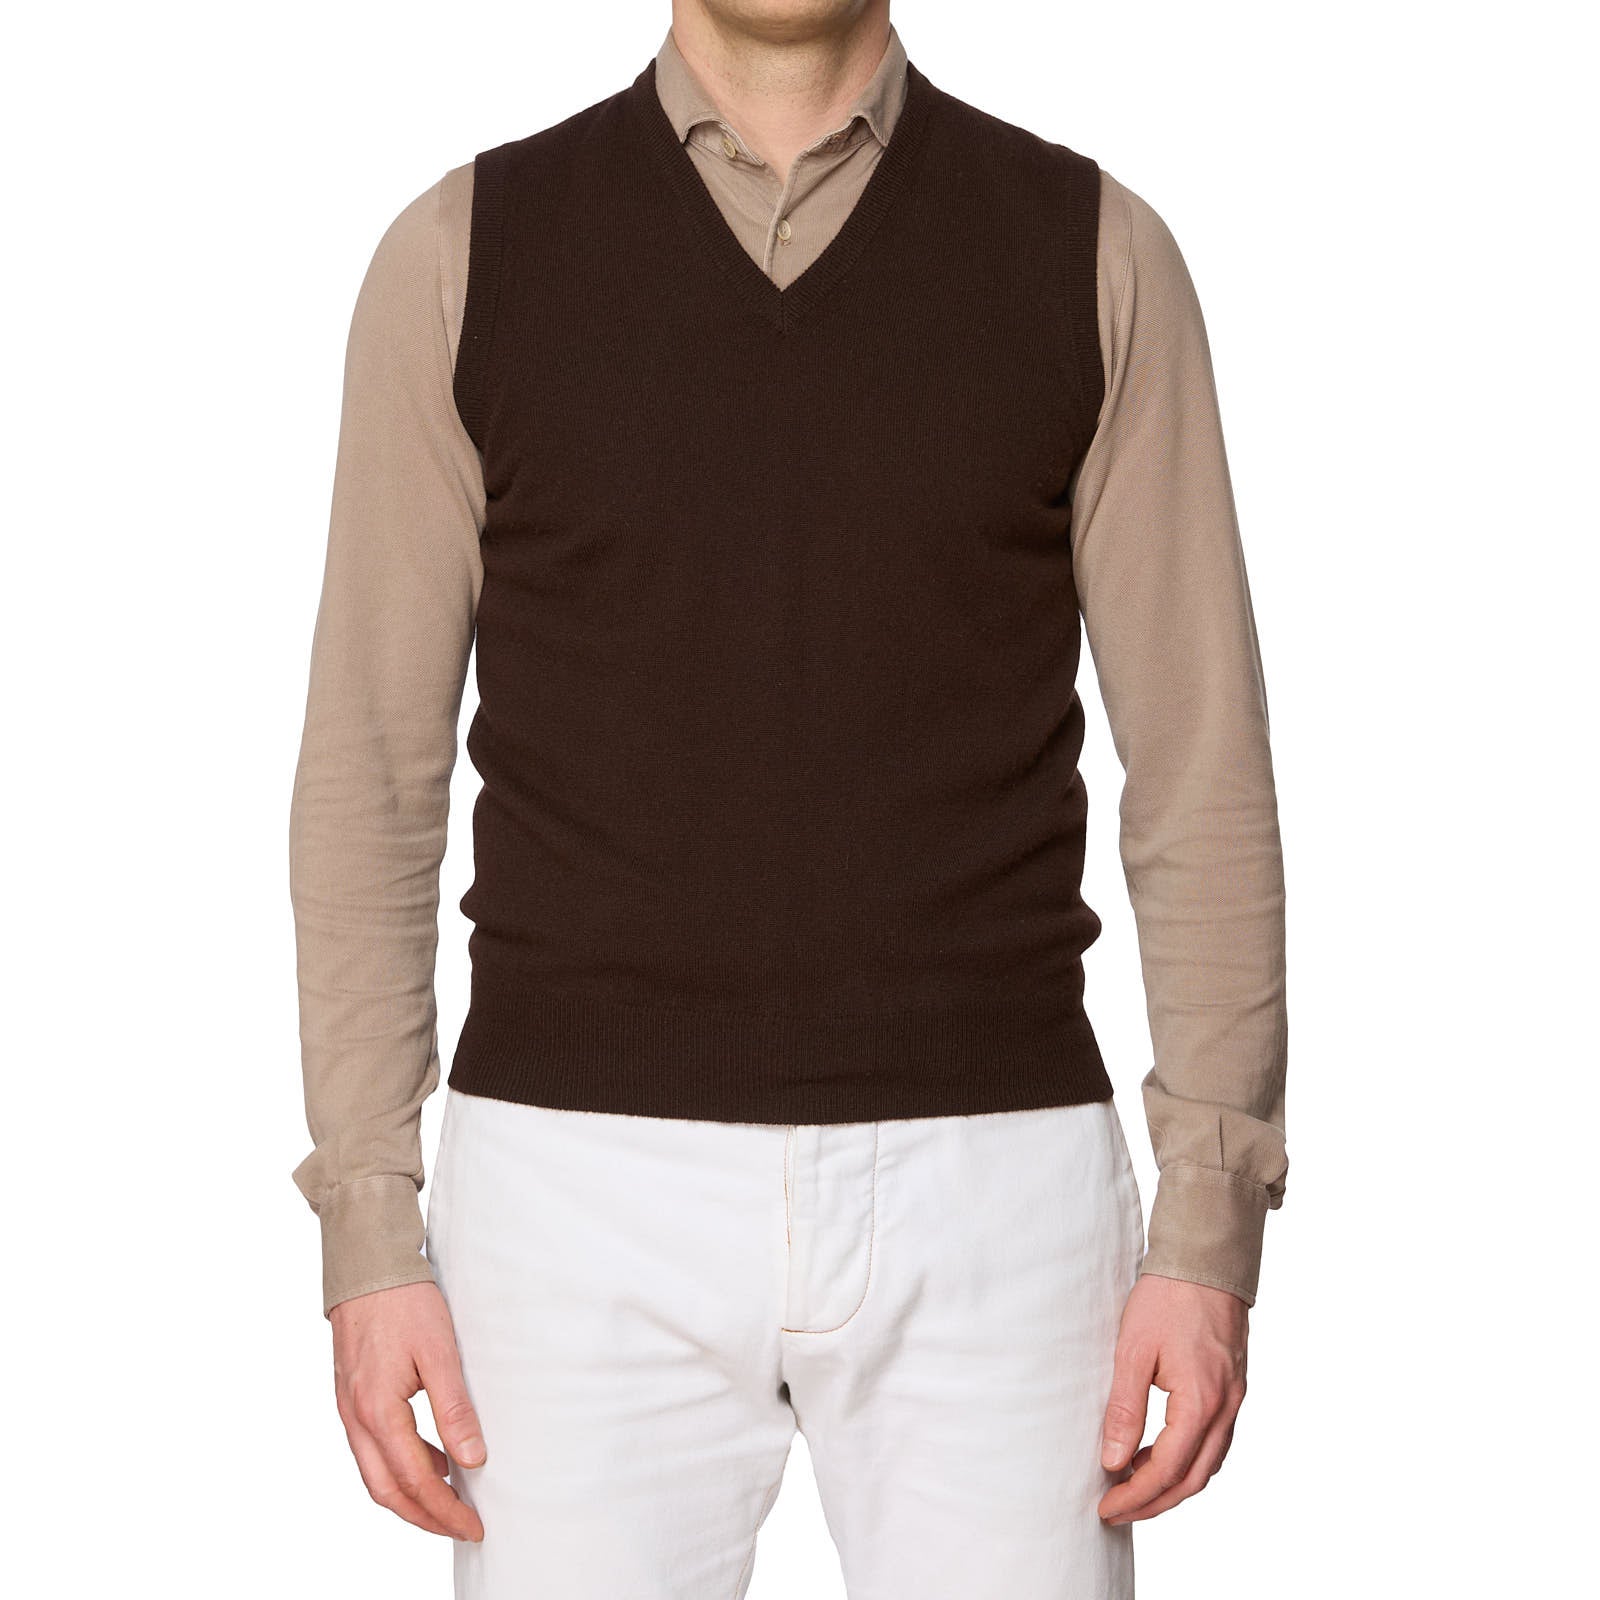 DELLA CIANA for VANNUCCI Brown Cashmere Knit Sweater Vest EU 46 NEW US XS